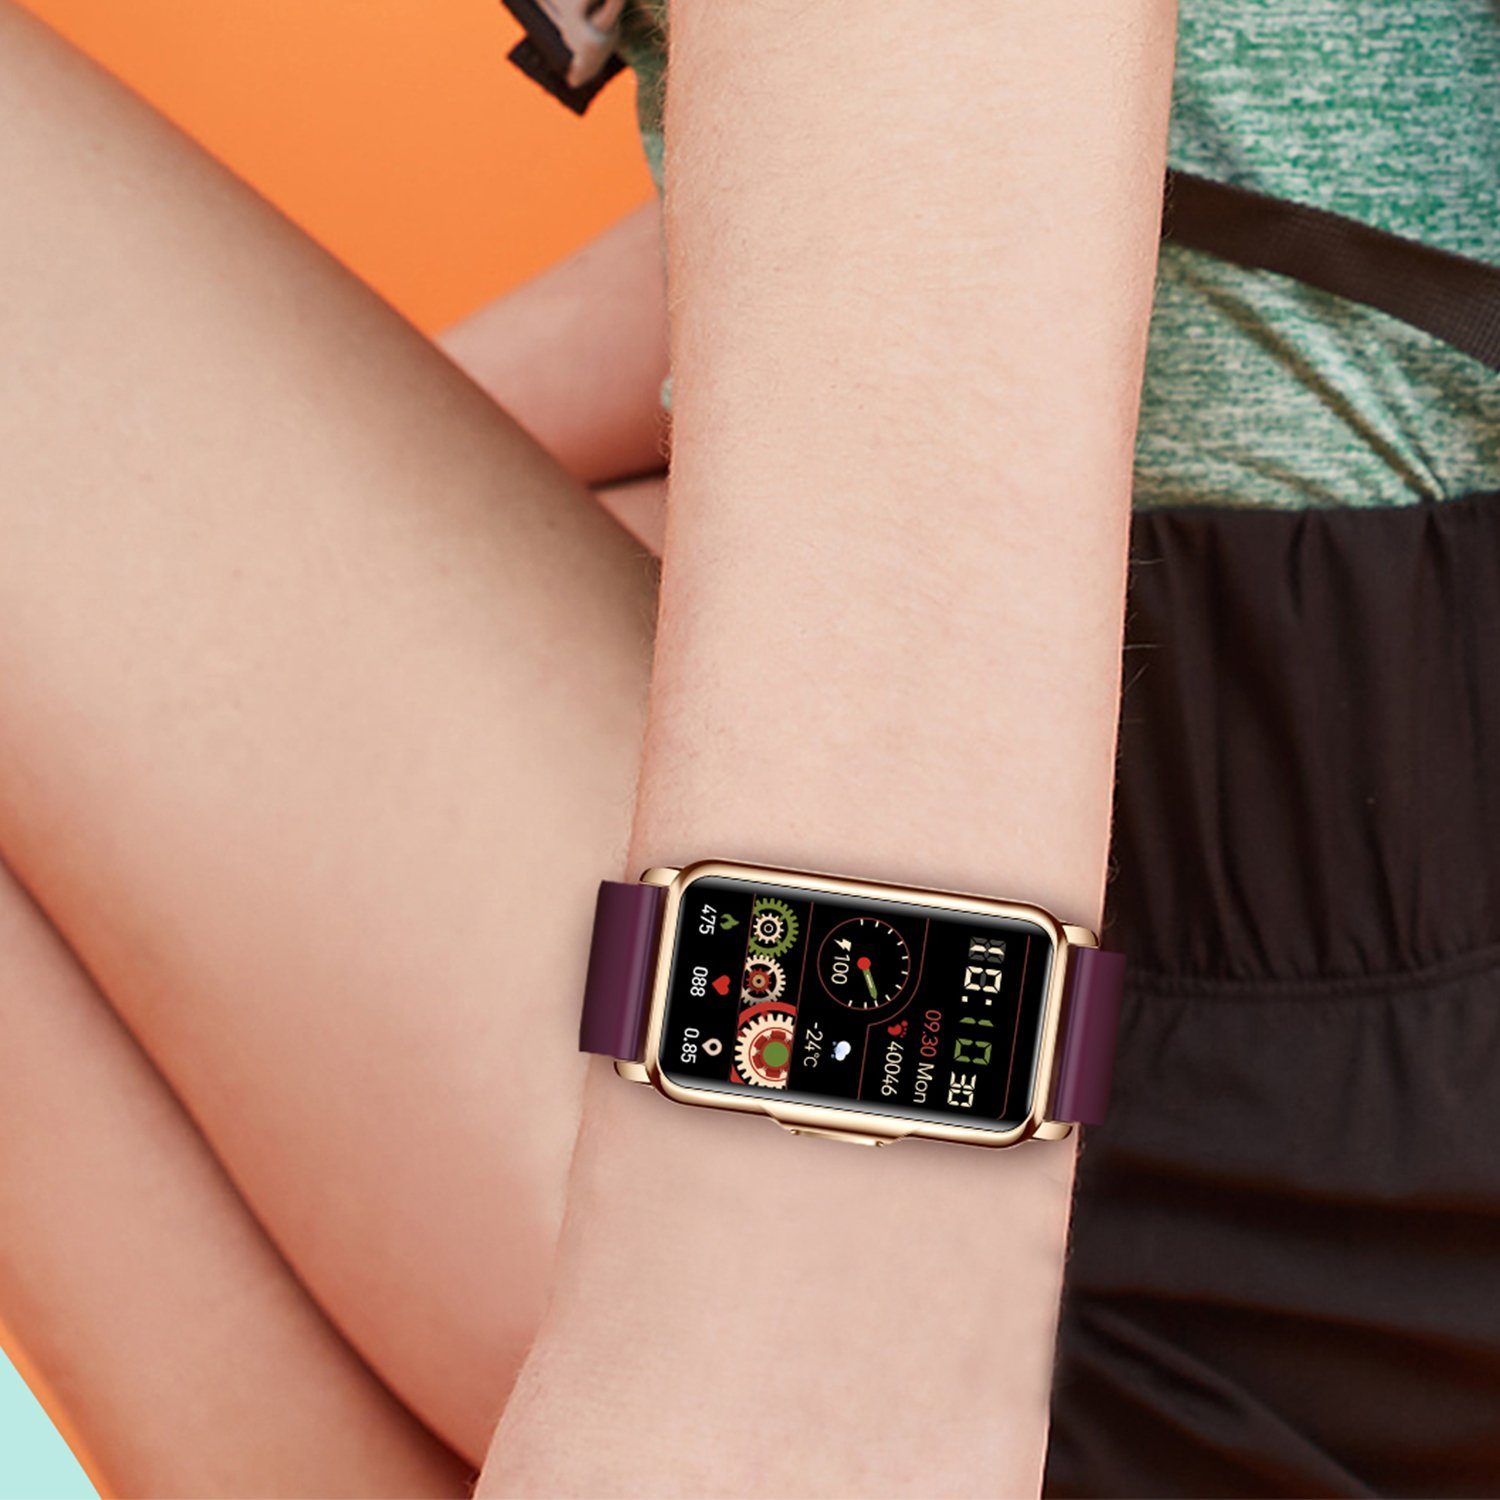 Damen cm), Gesundheitsfunktionen iOS Orange Watch, Haiaveng Smart Zoll, (3,73 Smartwatch Fitness Schwarz Android + und Smartwatch cm/1,47 Damen Tracker, Uhr, Fitness